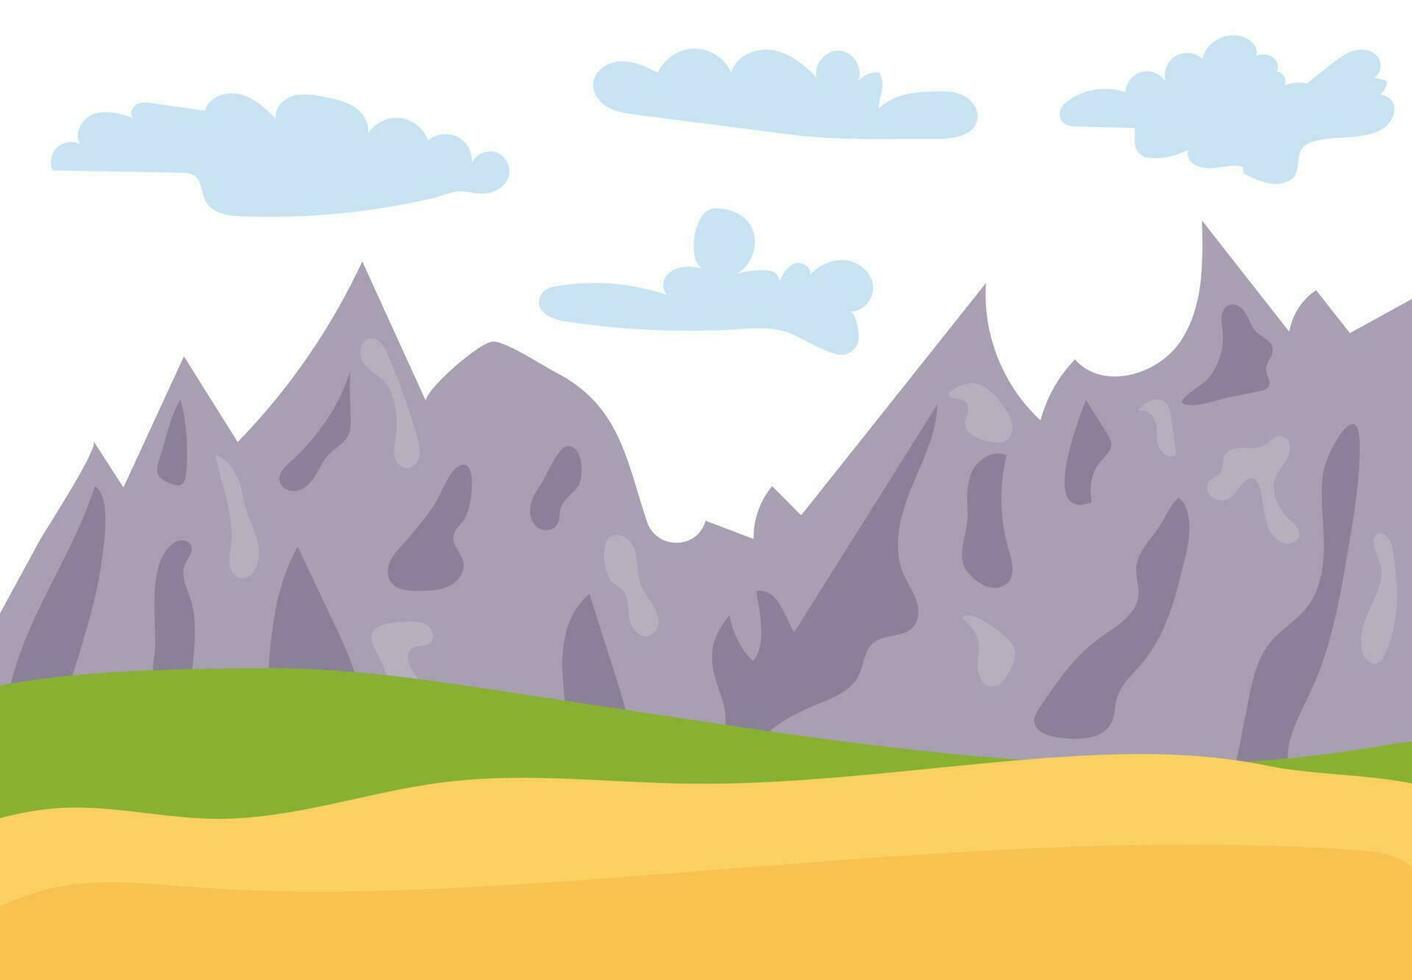 natürliche karikaturlandschaft im flachen stil mit bergen, blauem himmel, wolken und hügeln. Vektor-Illustration vektor